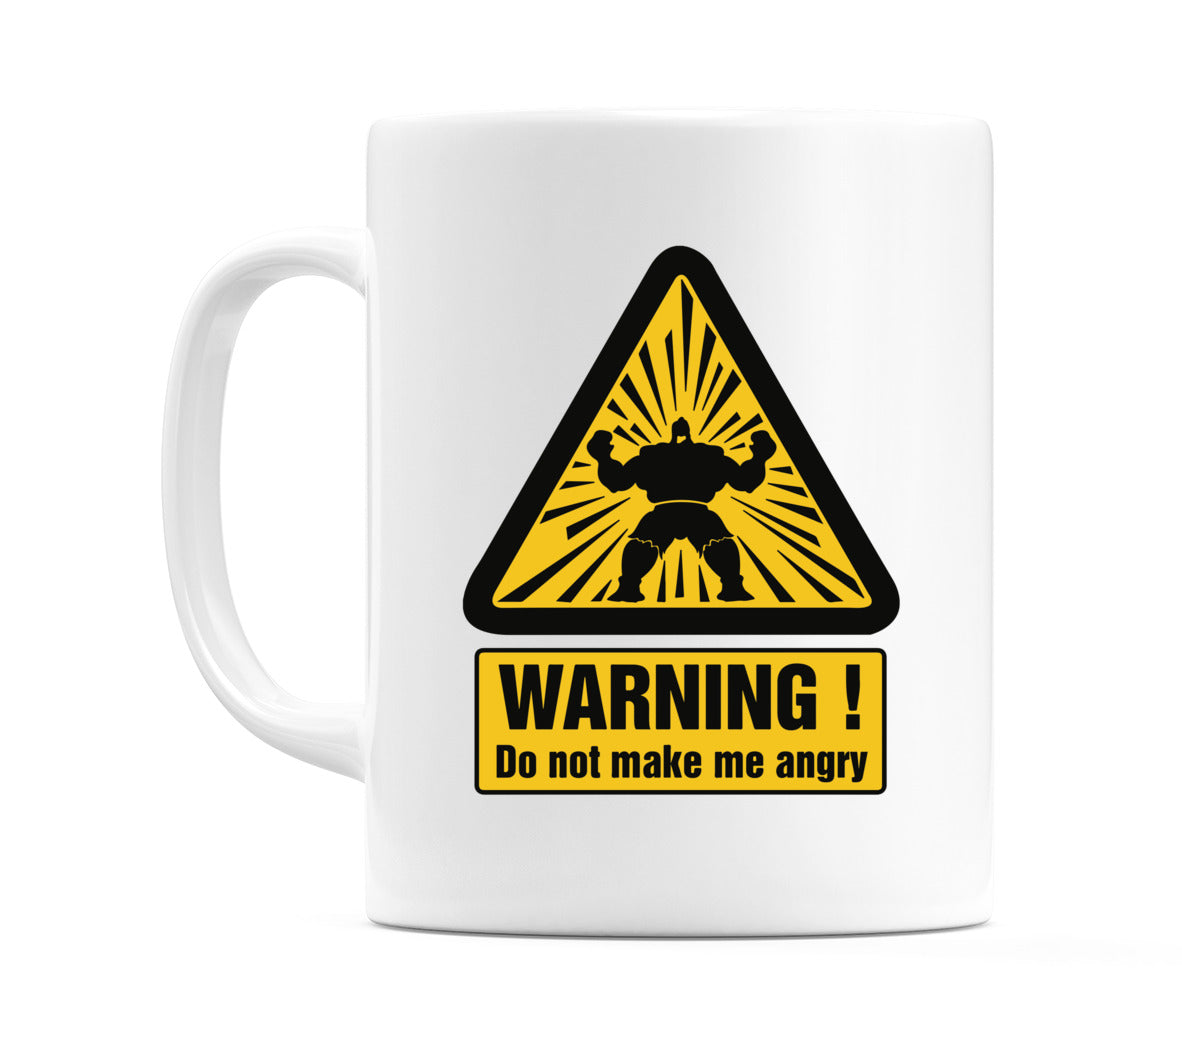 WARNING! Do not make me angry Mug